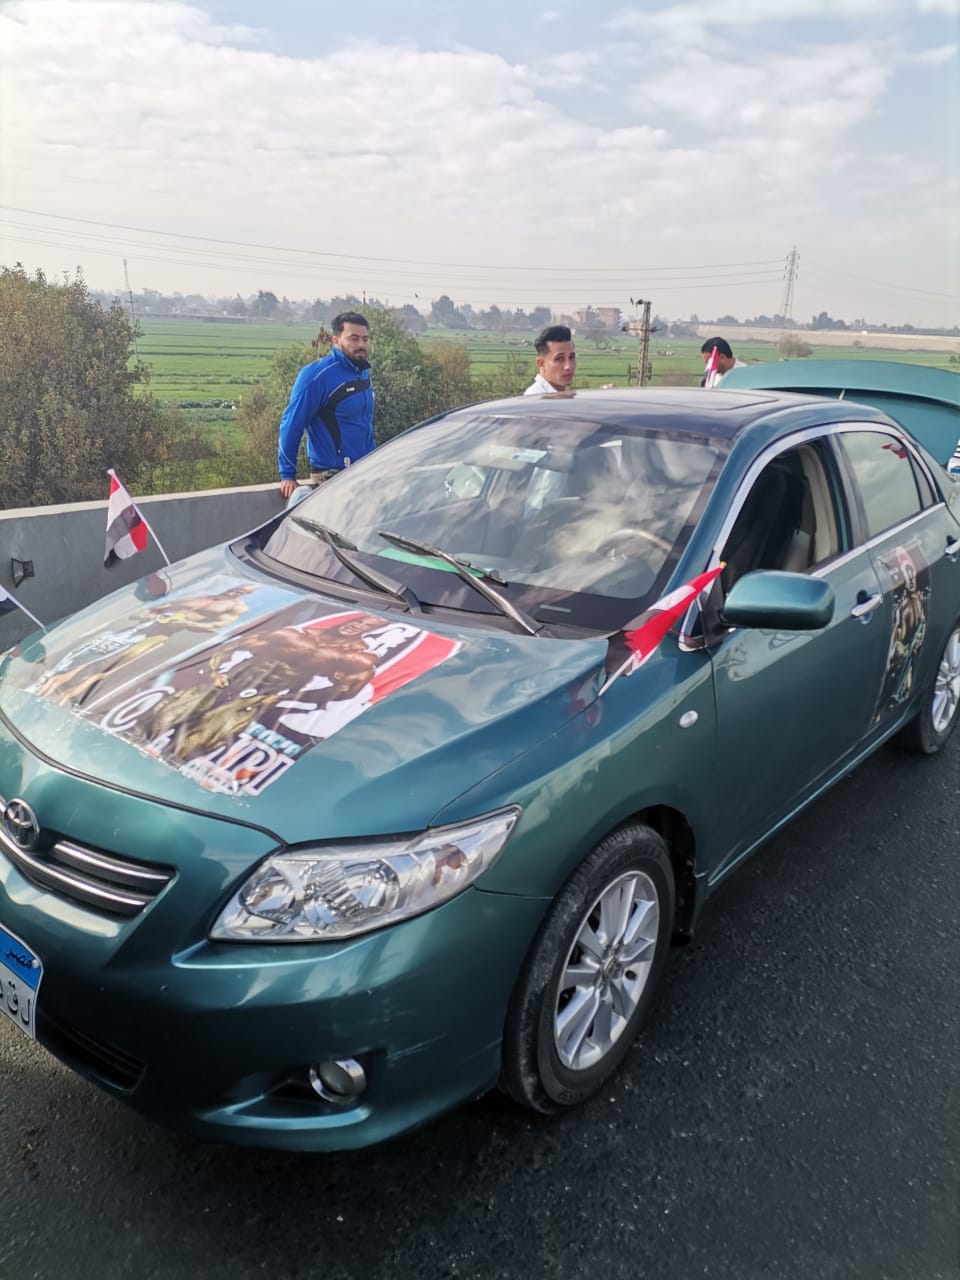 مسيرة بالسيارات وشياب يرتدون تيشرت عليها صورة رامي السبيعي لاستقباله (18)